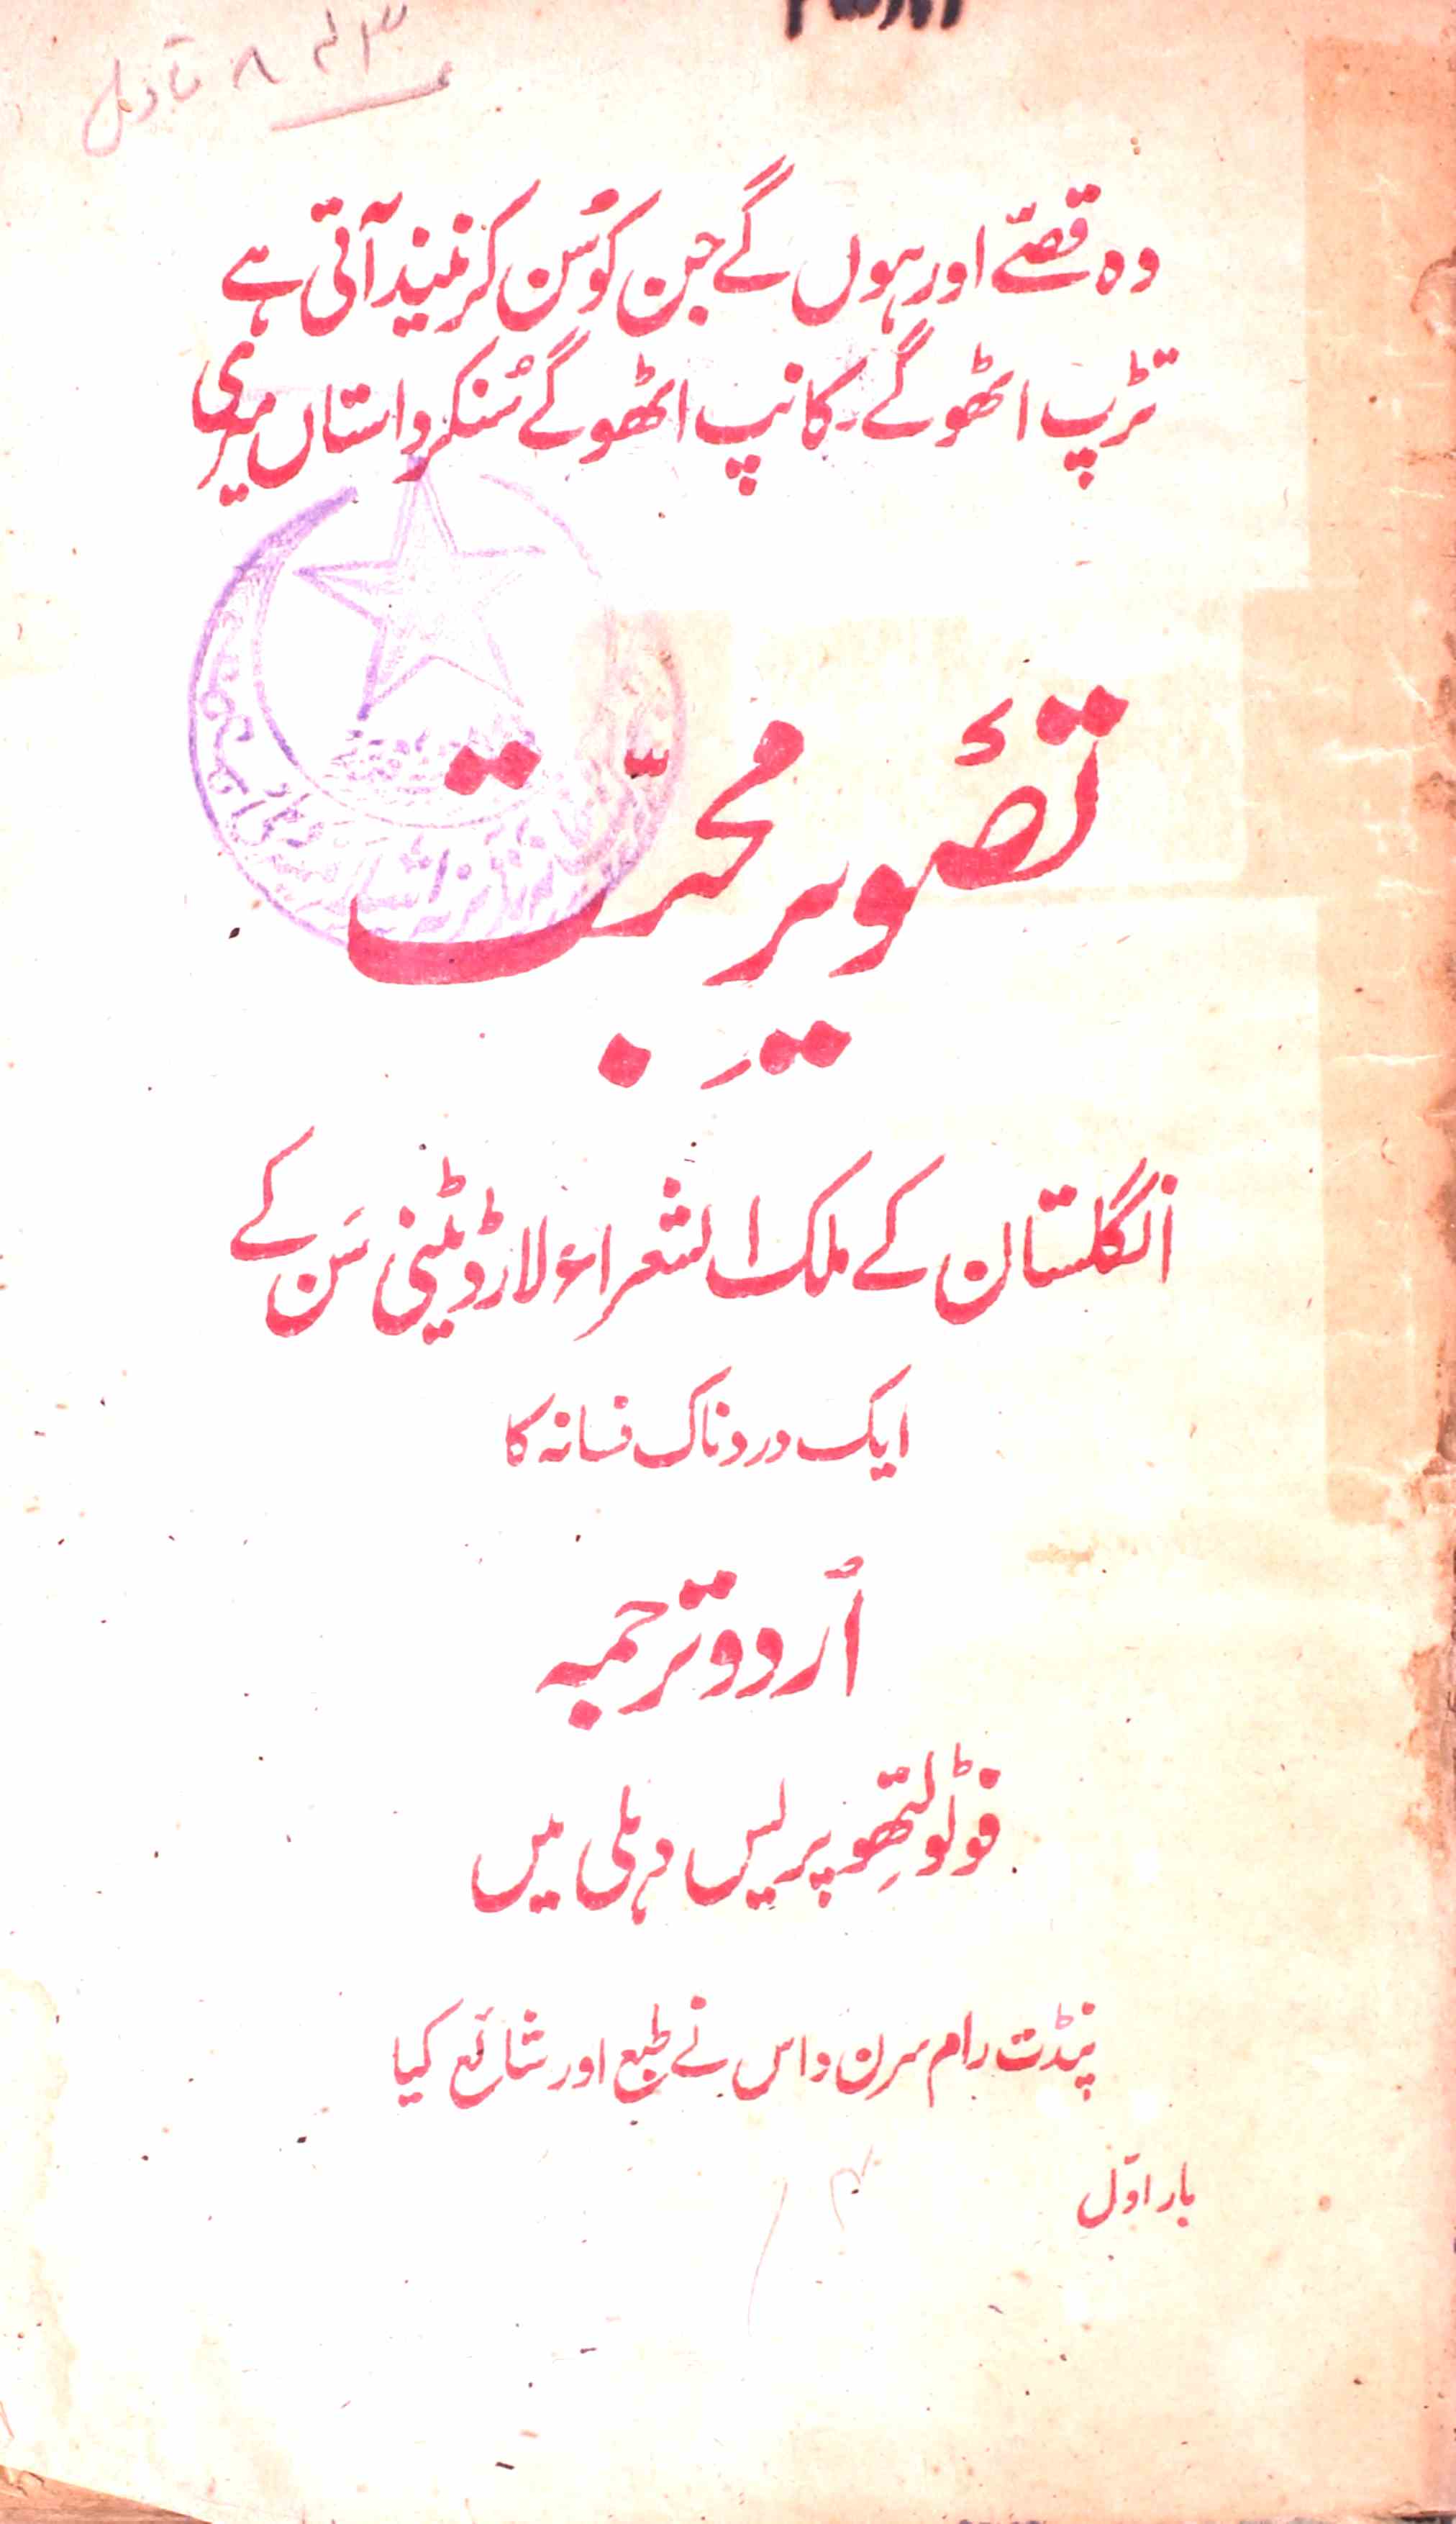 Tasveer-e-Mohabbat